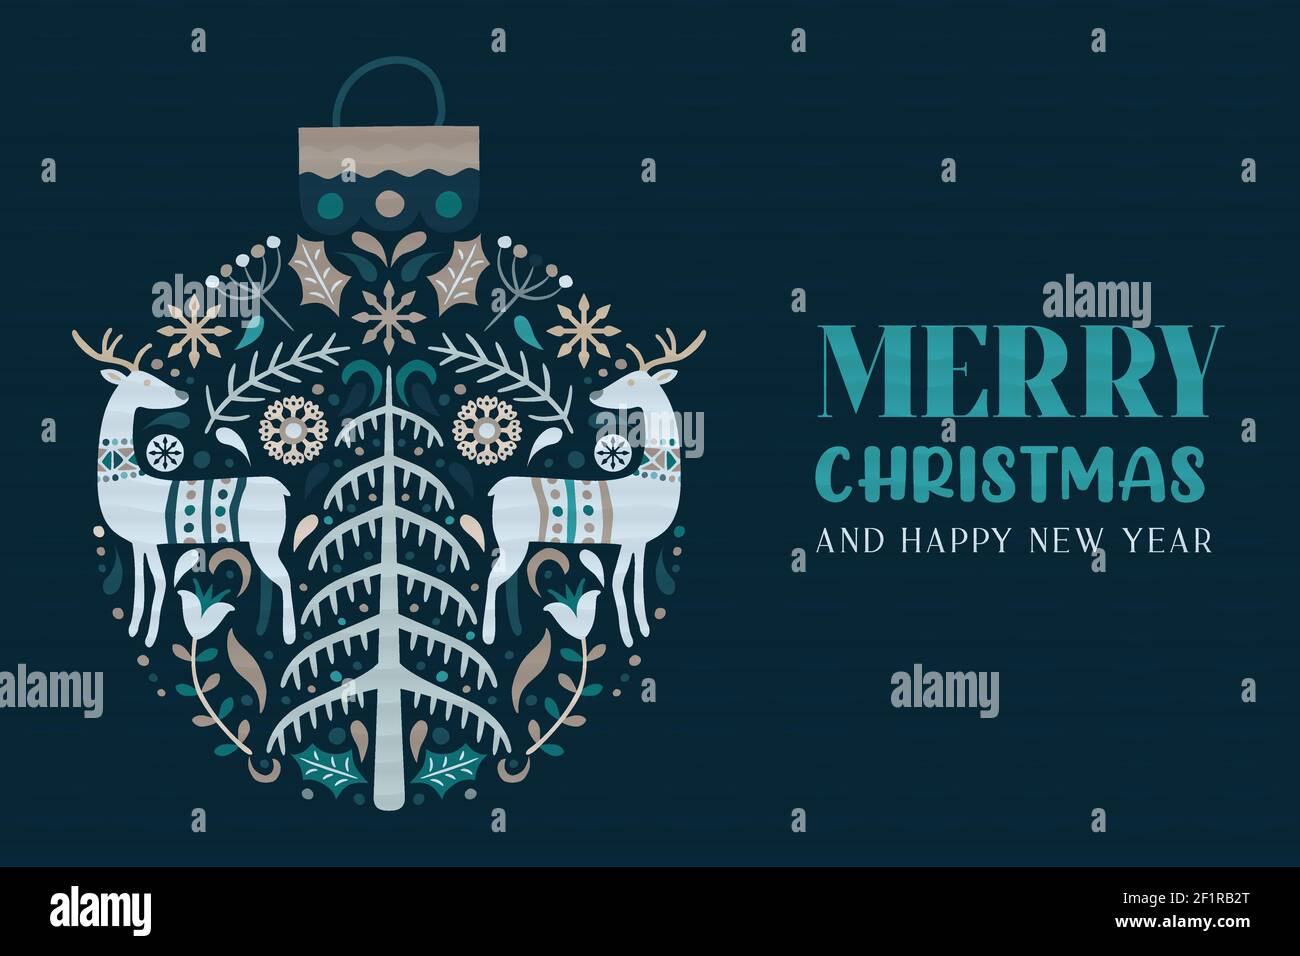 Allegro Natale felice anno nuovo biglietto d'auguri illustrazione. Arte scandinava tradizionale con decorazioni invernali disegnate a mano. Reind nordico d'epoca Illustrazione Vettoriale